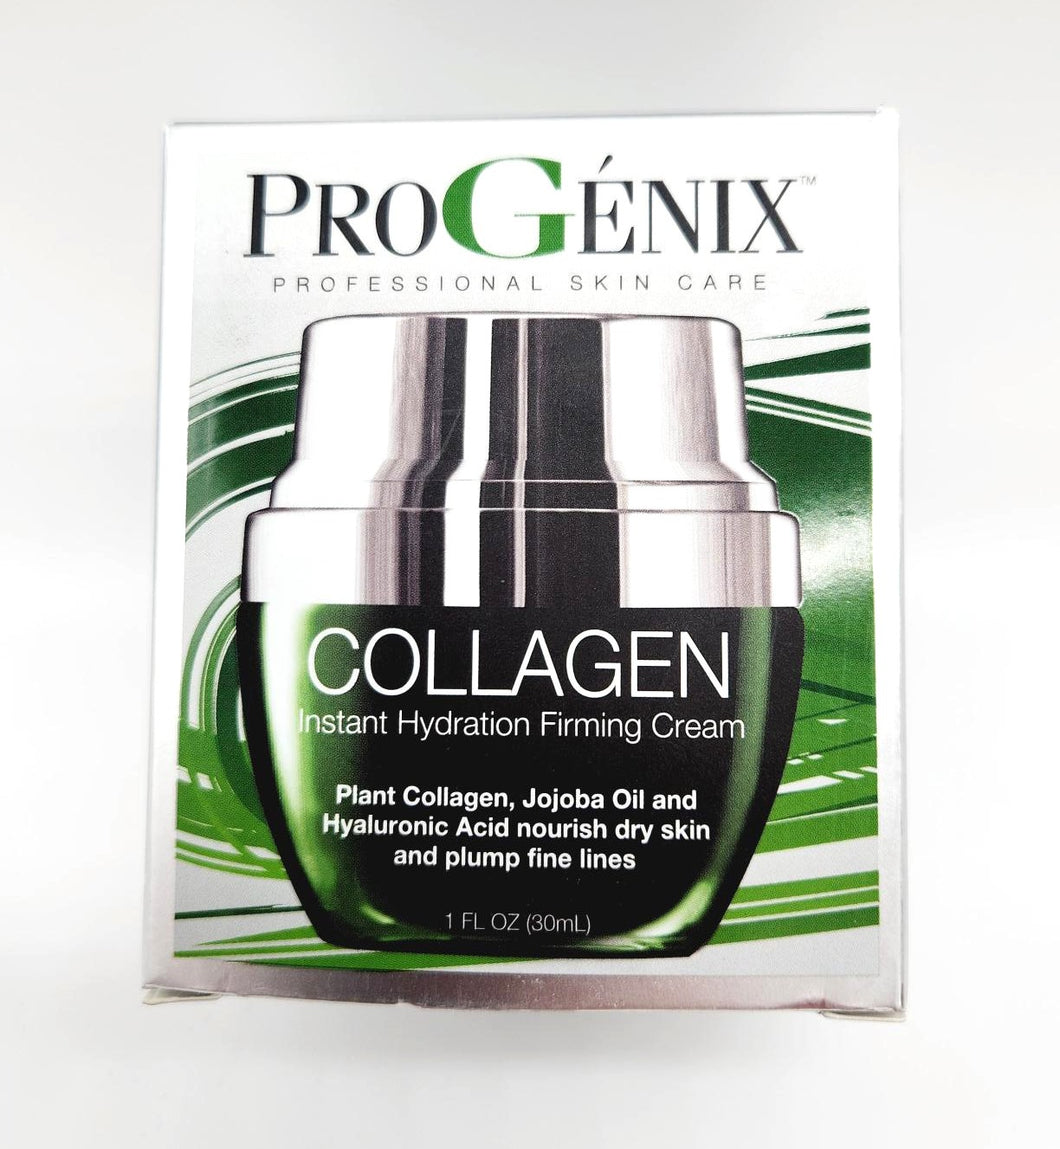 Progenix Collagen Instant Hydration Firming Cream